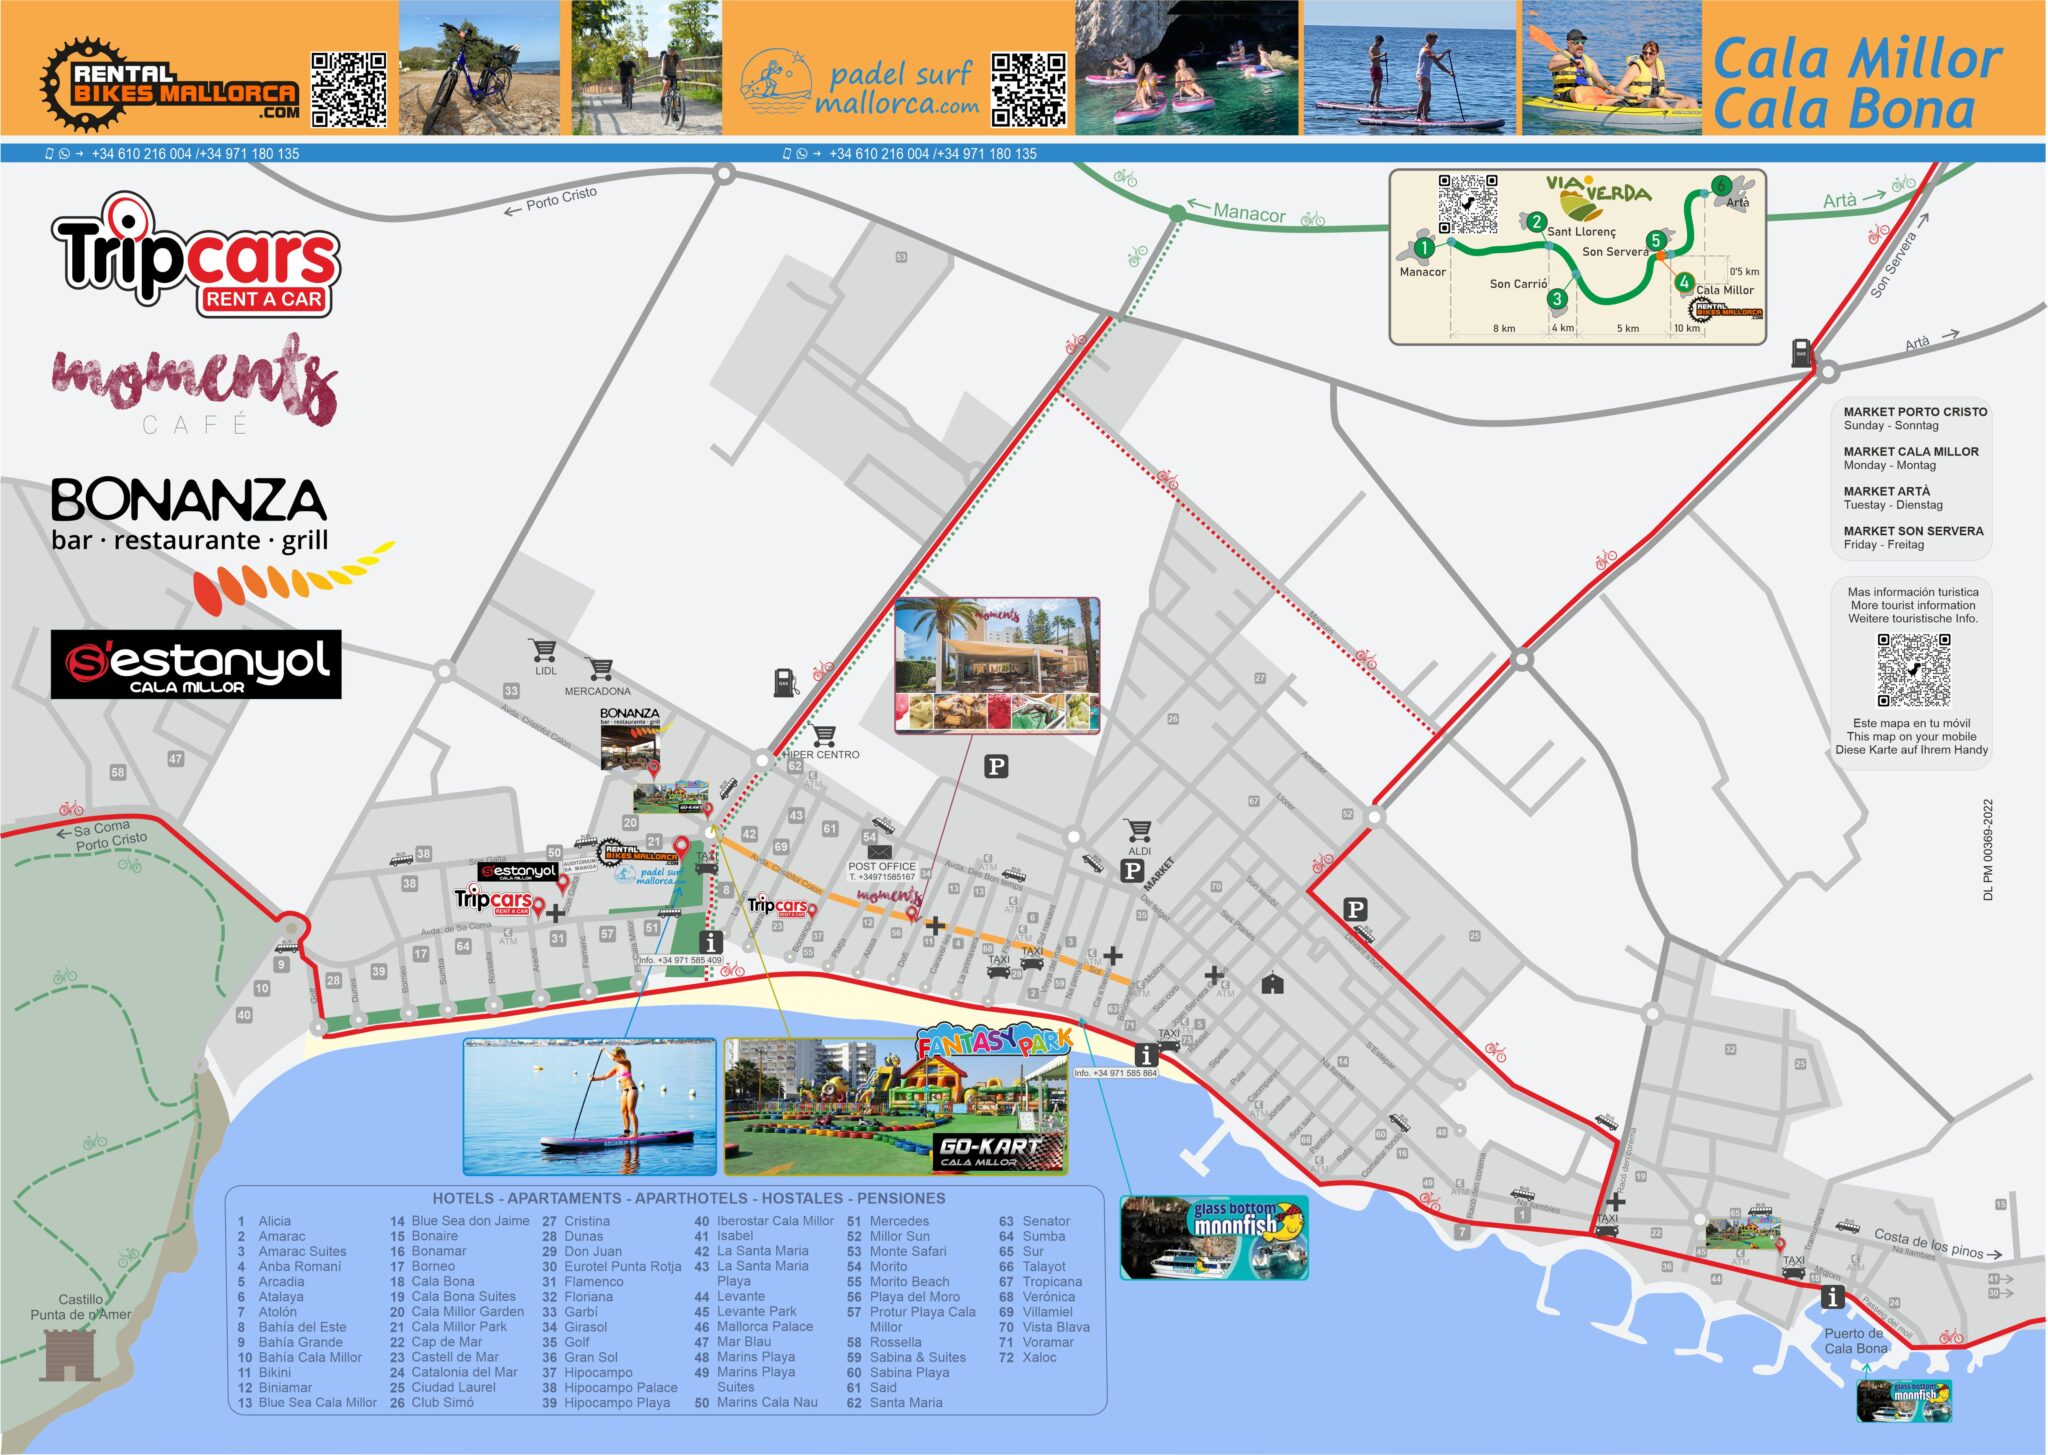 Mapa cicloturístico y de información turística Cala Millor-Cala Bona